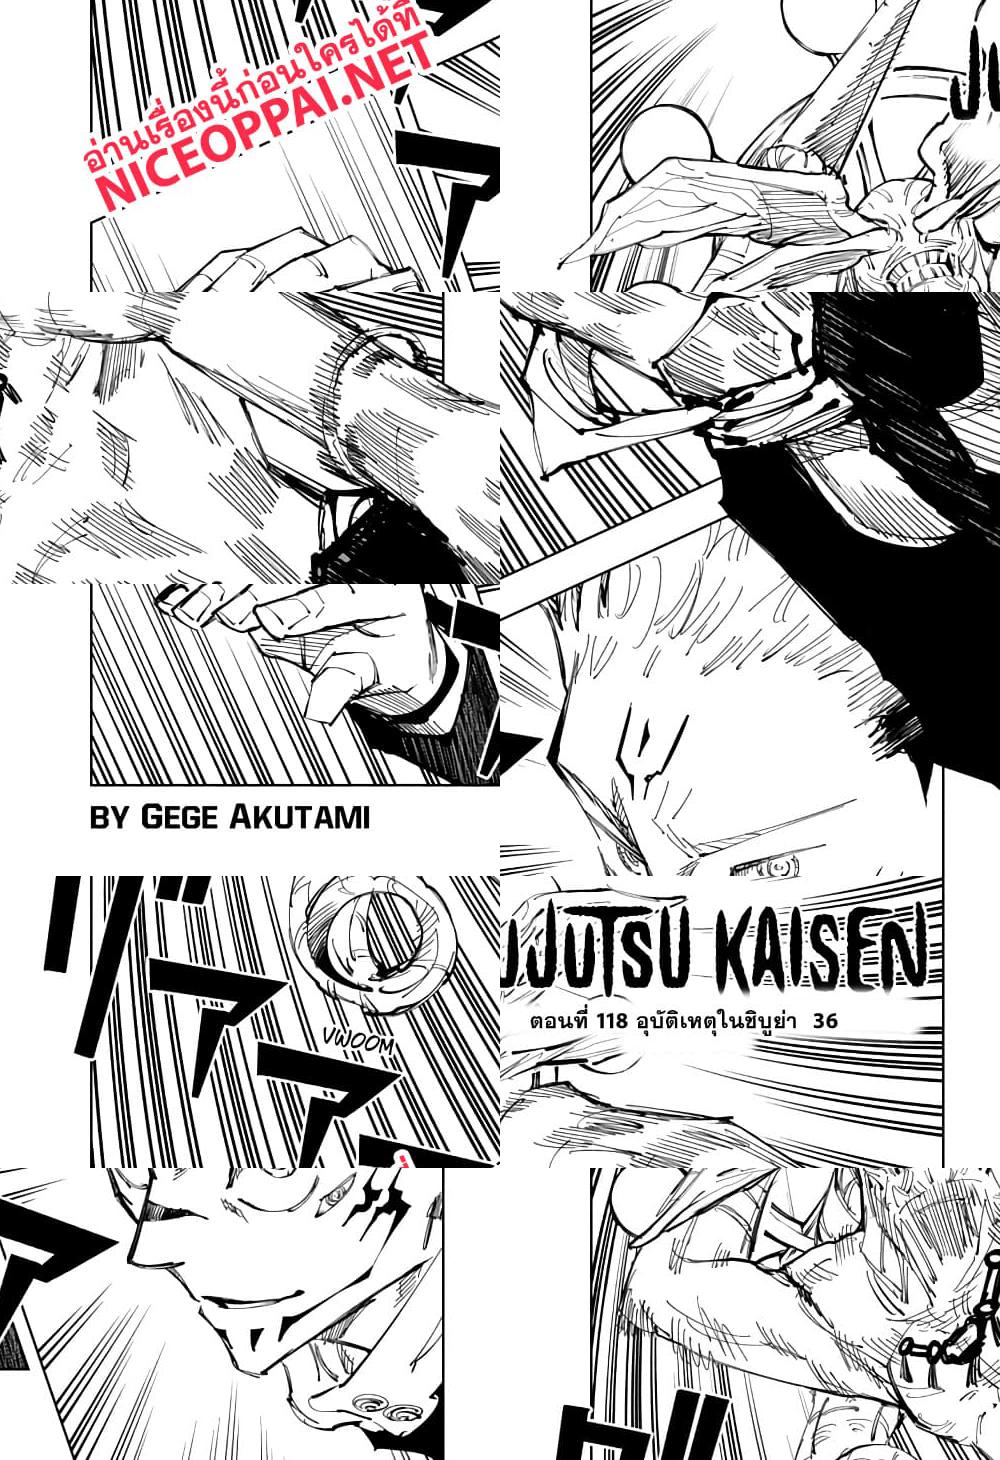 Jujutsu Kaisen มหาเวทย์ผนึกมาร - อุบัติการณ์ชิบุย่า 36 - 2